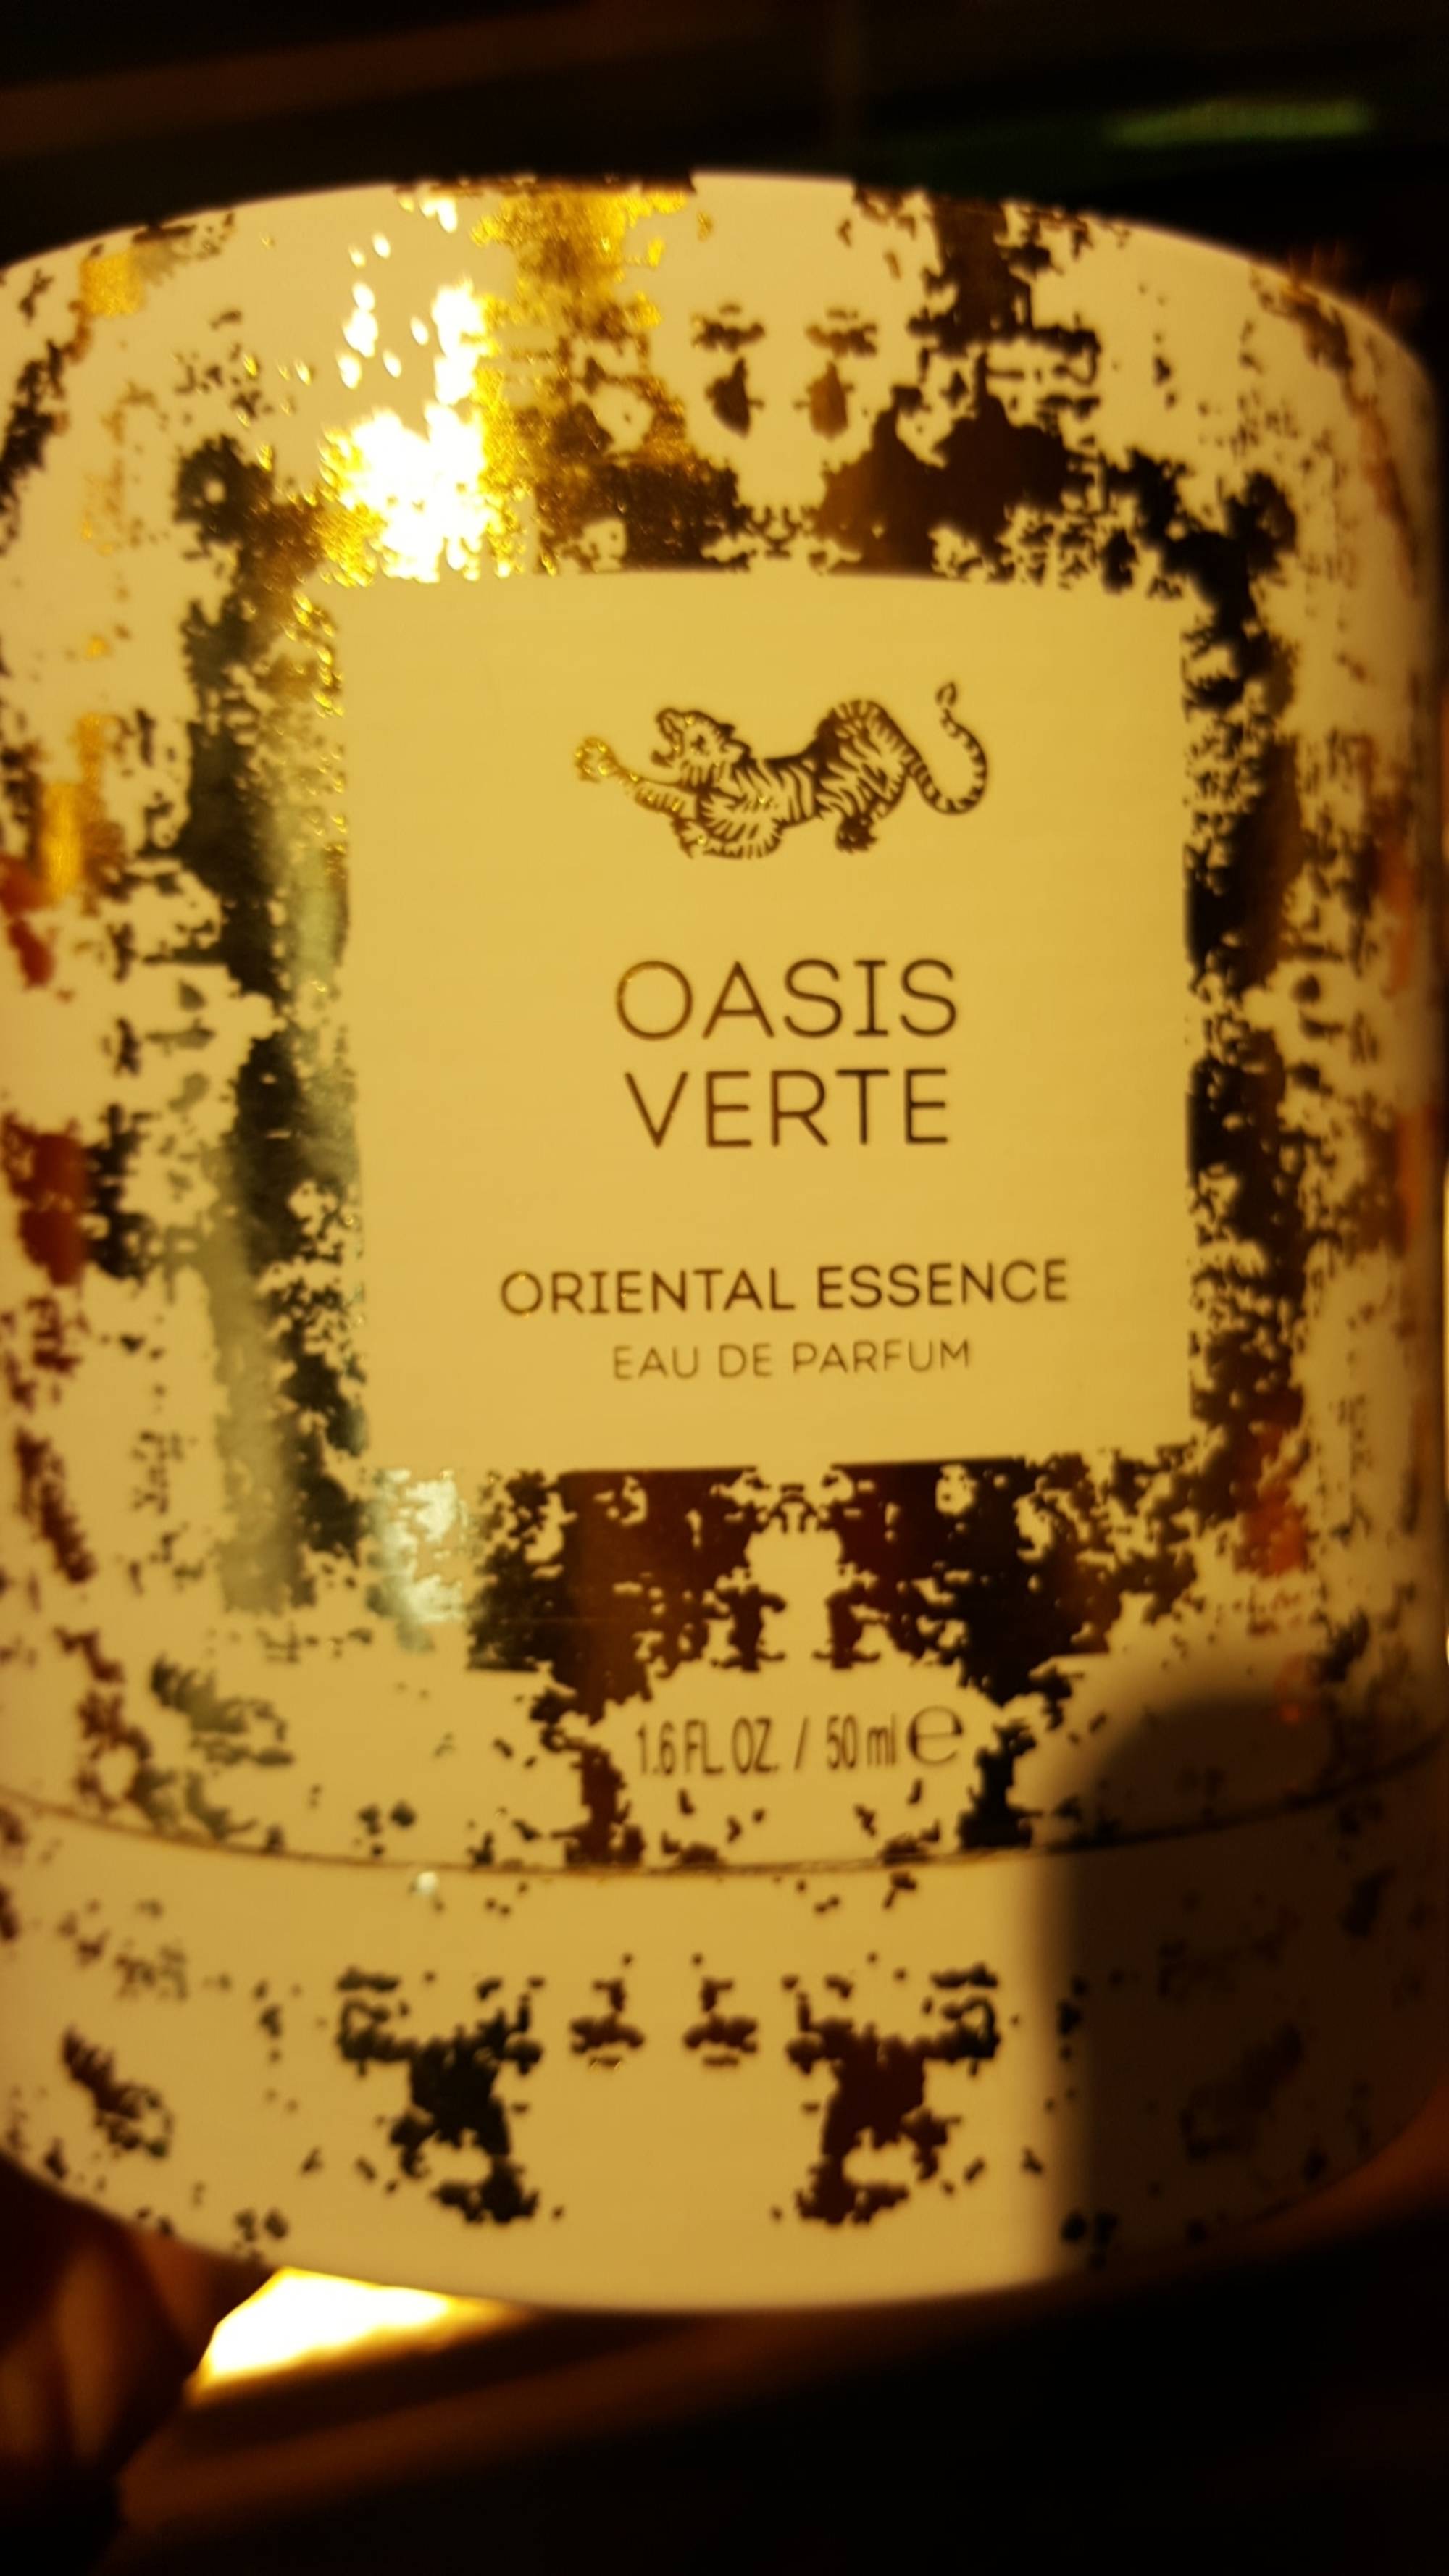 RITUALS - Oasis verte - Oriental essence, eau de parfum